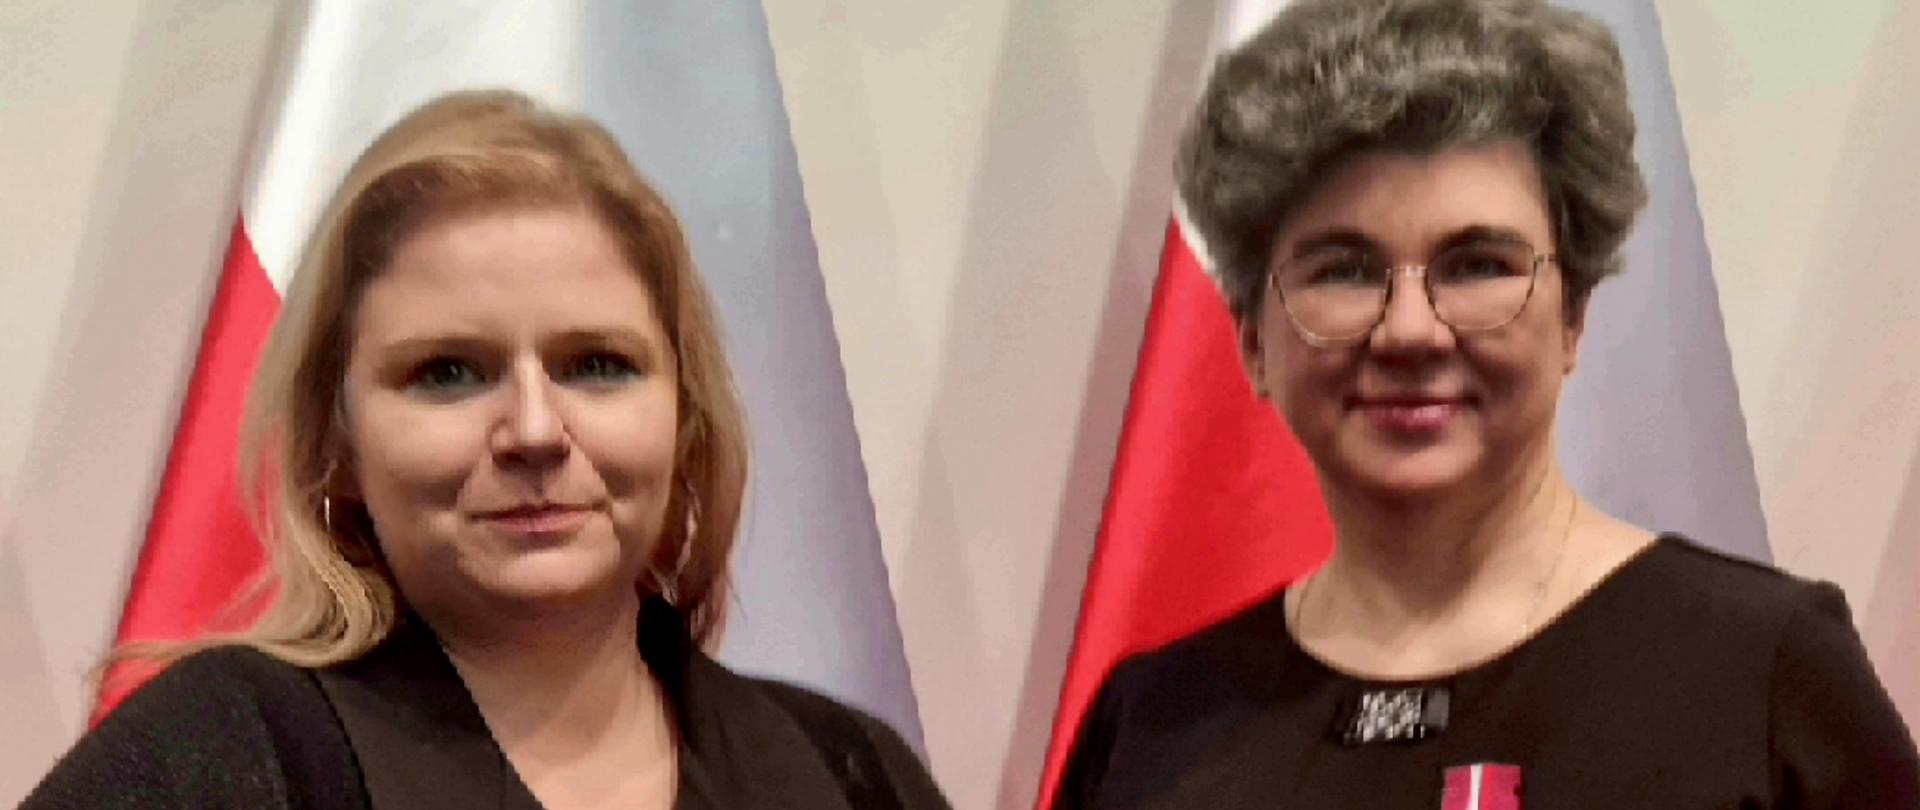 na tle flagi biało czerwonej dwie kobiety w czarnym ubraniu uśmiechnięte trzymające brązowe pudełka w których są medale